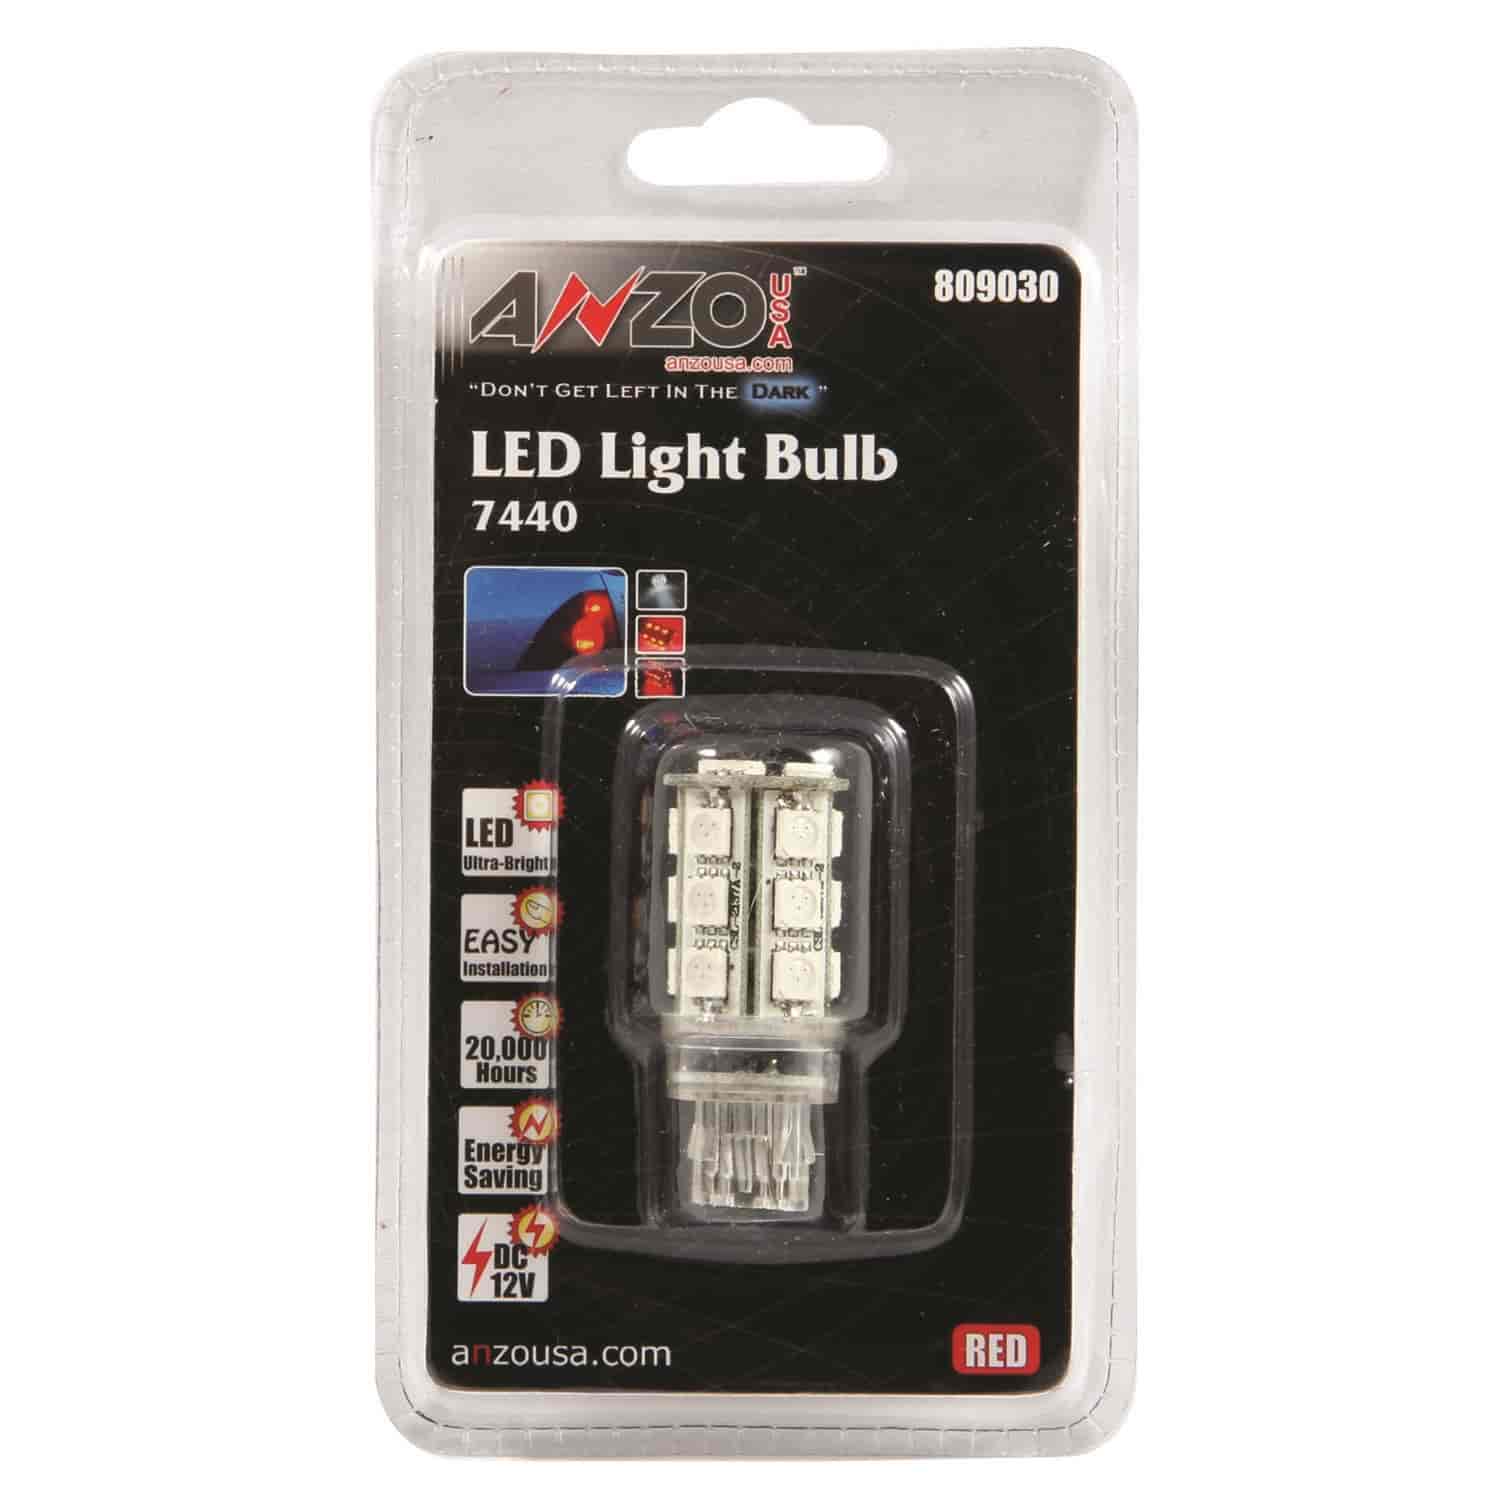 LED Universal Light Bulb 7443/7440 Red